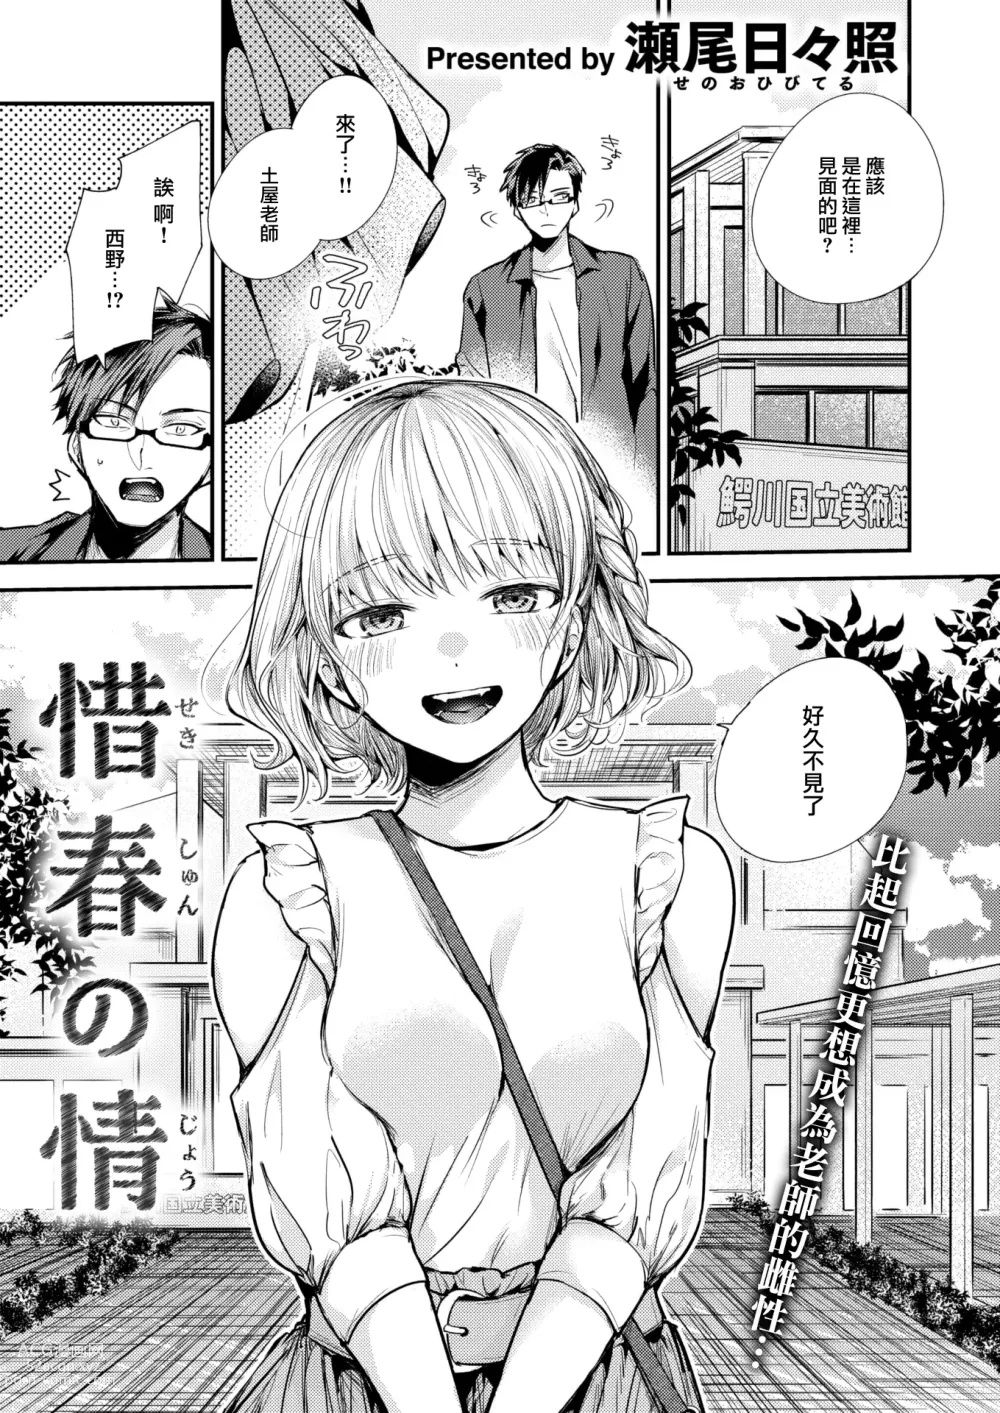 Page 2 of manga Sekishun no Jou